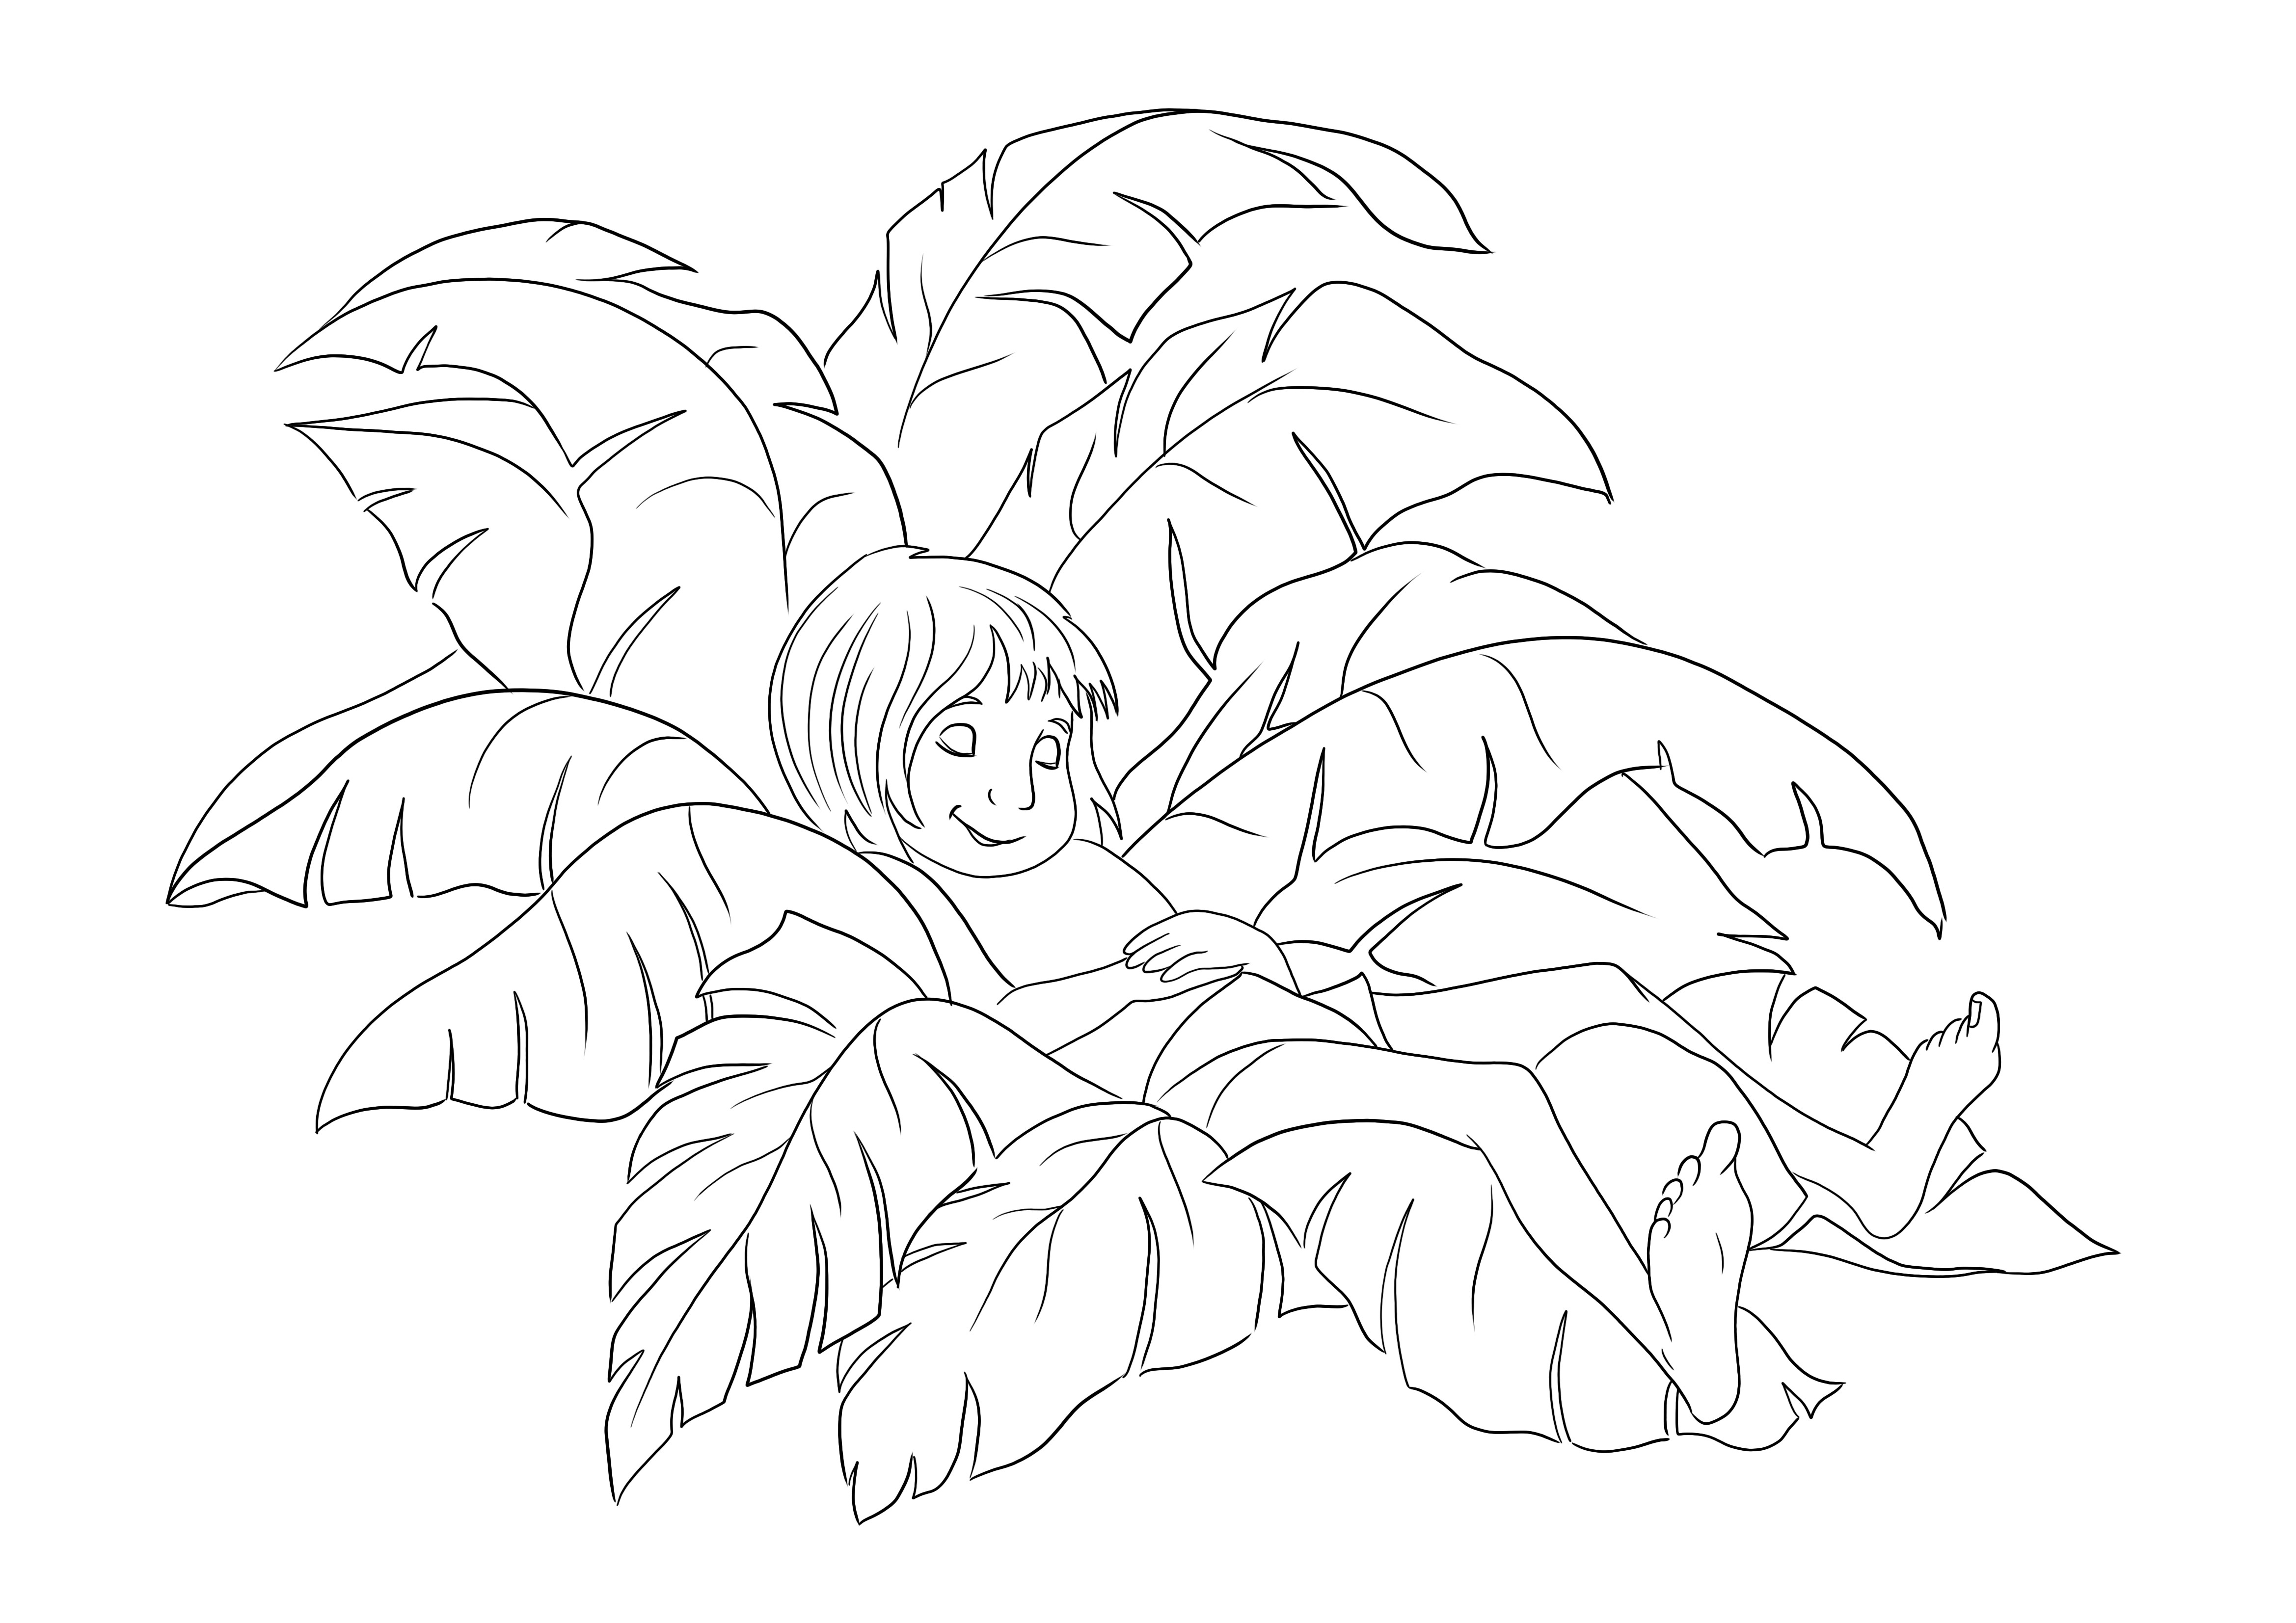 Łatwe kolorowanie i drukowanie Mowgli śpiącego na liściach palmowych do bezpłatnego użytku